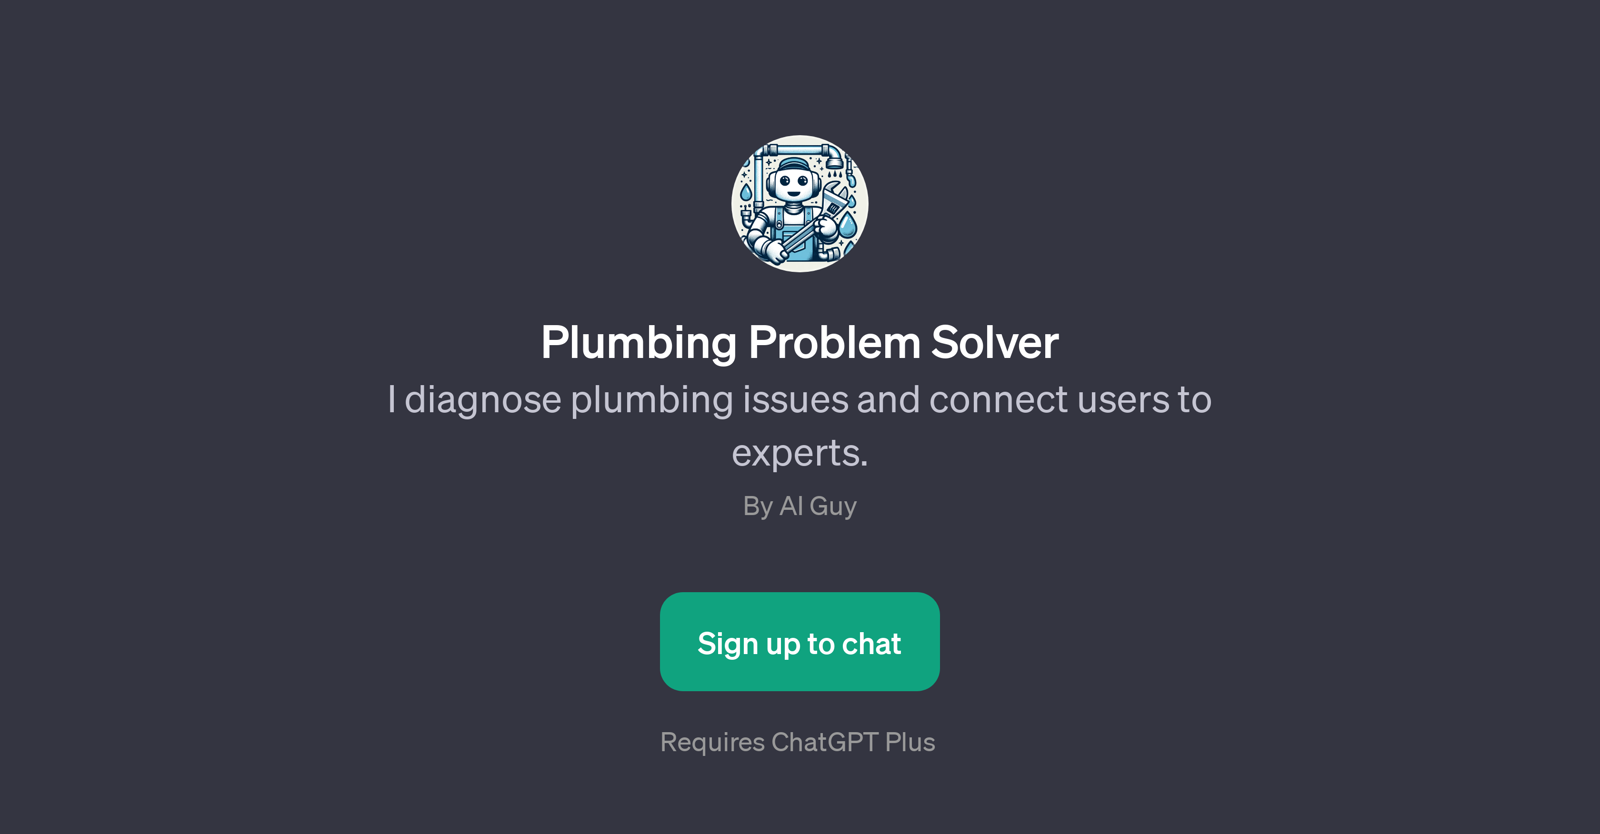 Plumbing Problem Solver website